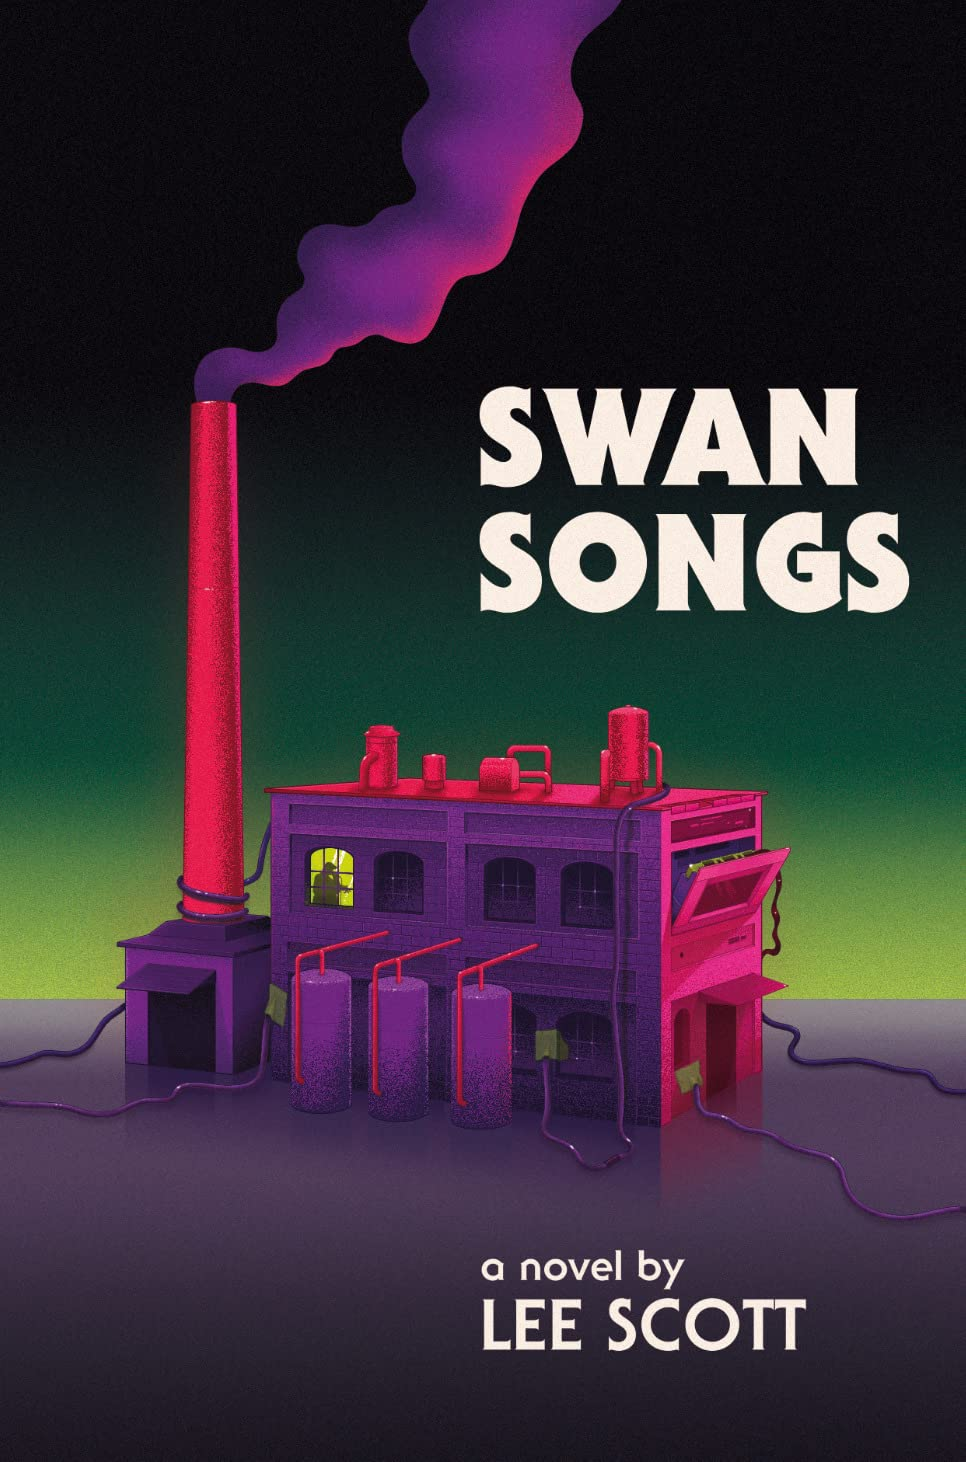 Aliens and Alienation in Lee Scott’s Swan Songs